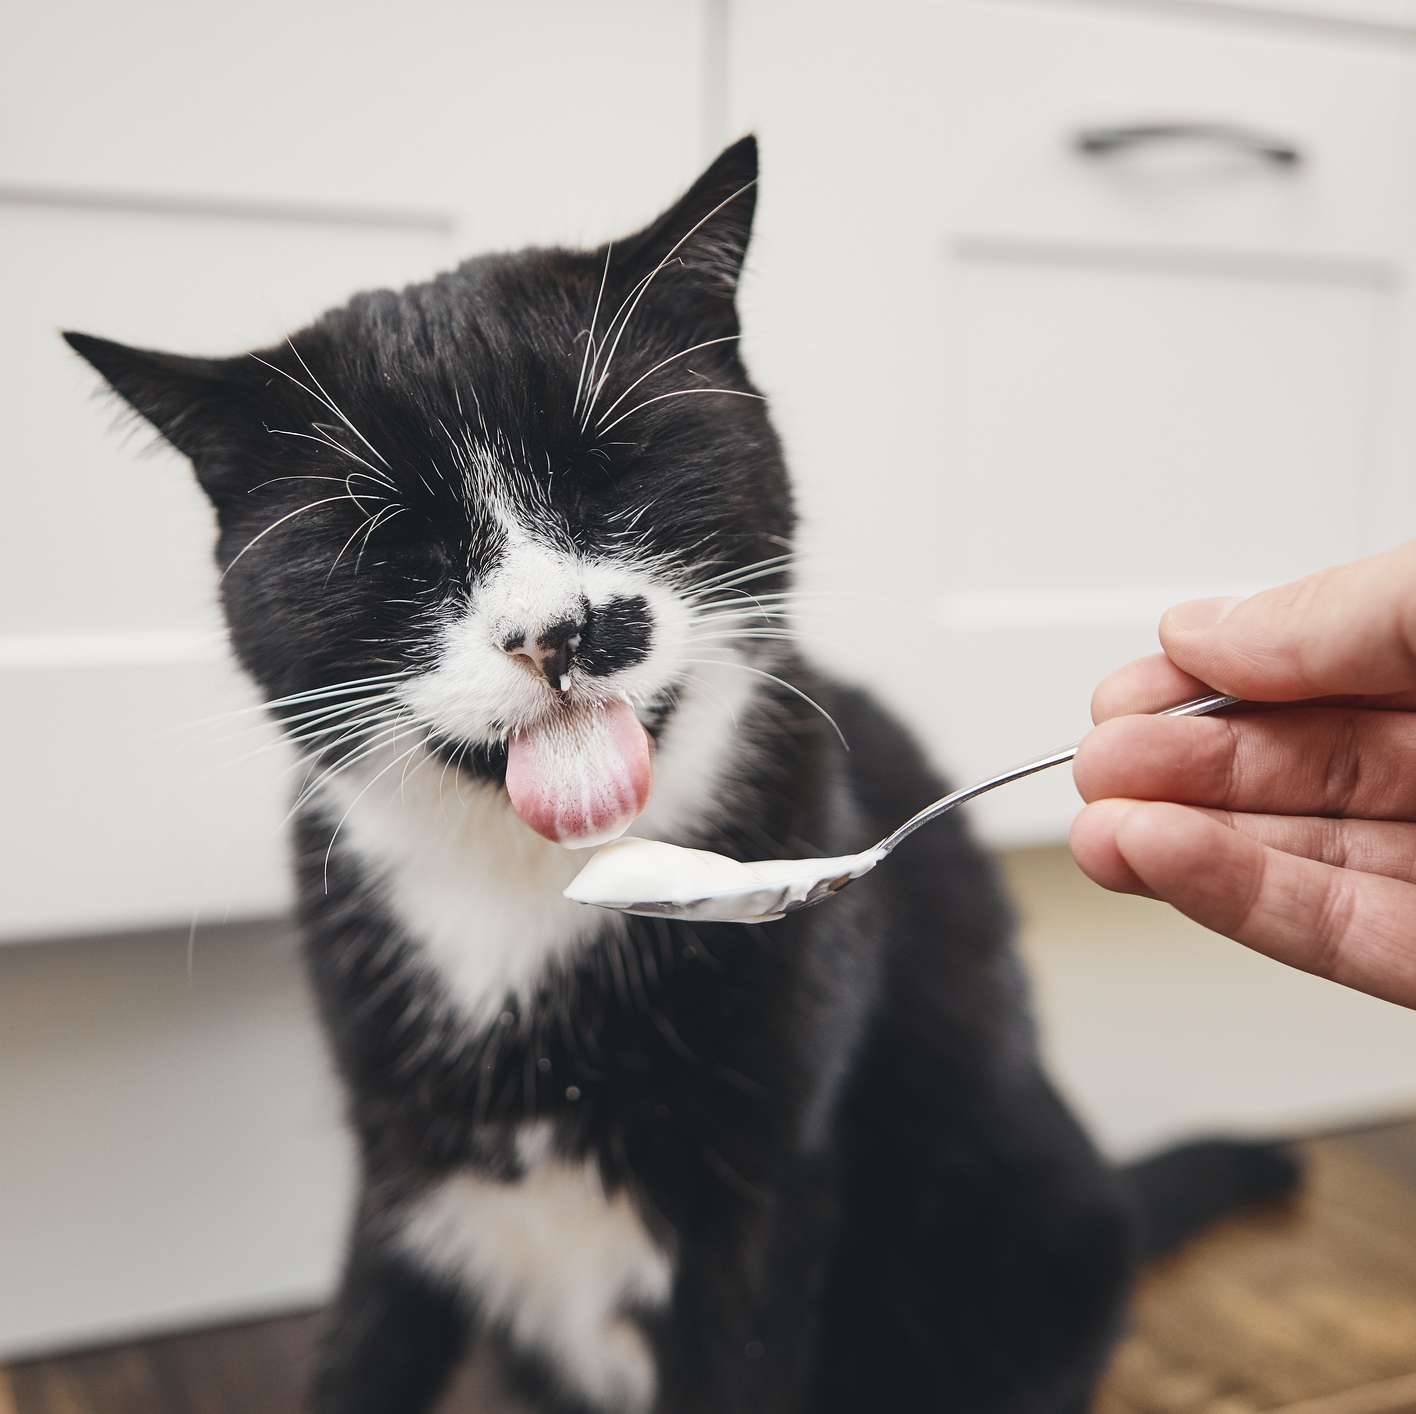 Katze schleckt Joghurt von Löffel